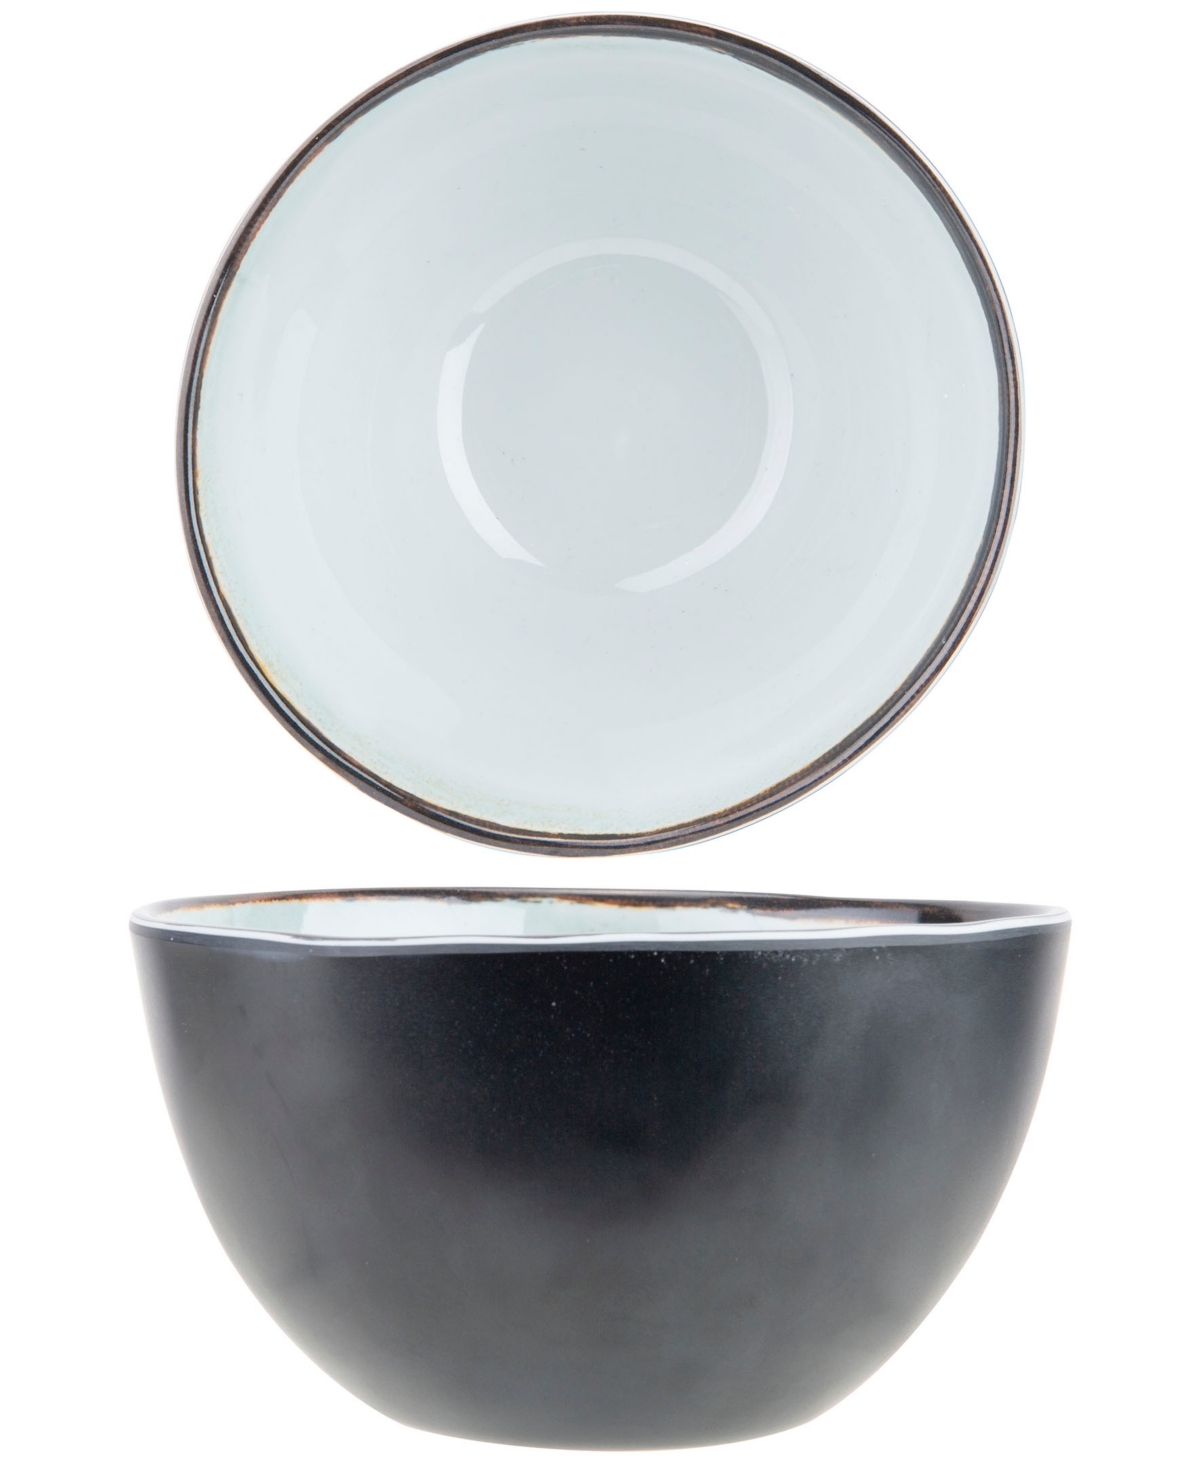 Plato Melamine Unbreakable Bowl, Set of 6 - White, Beige